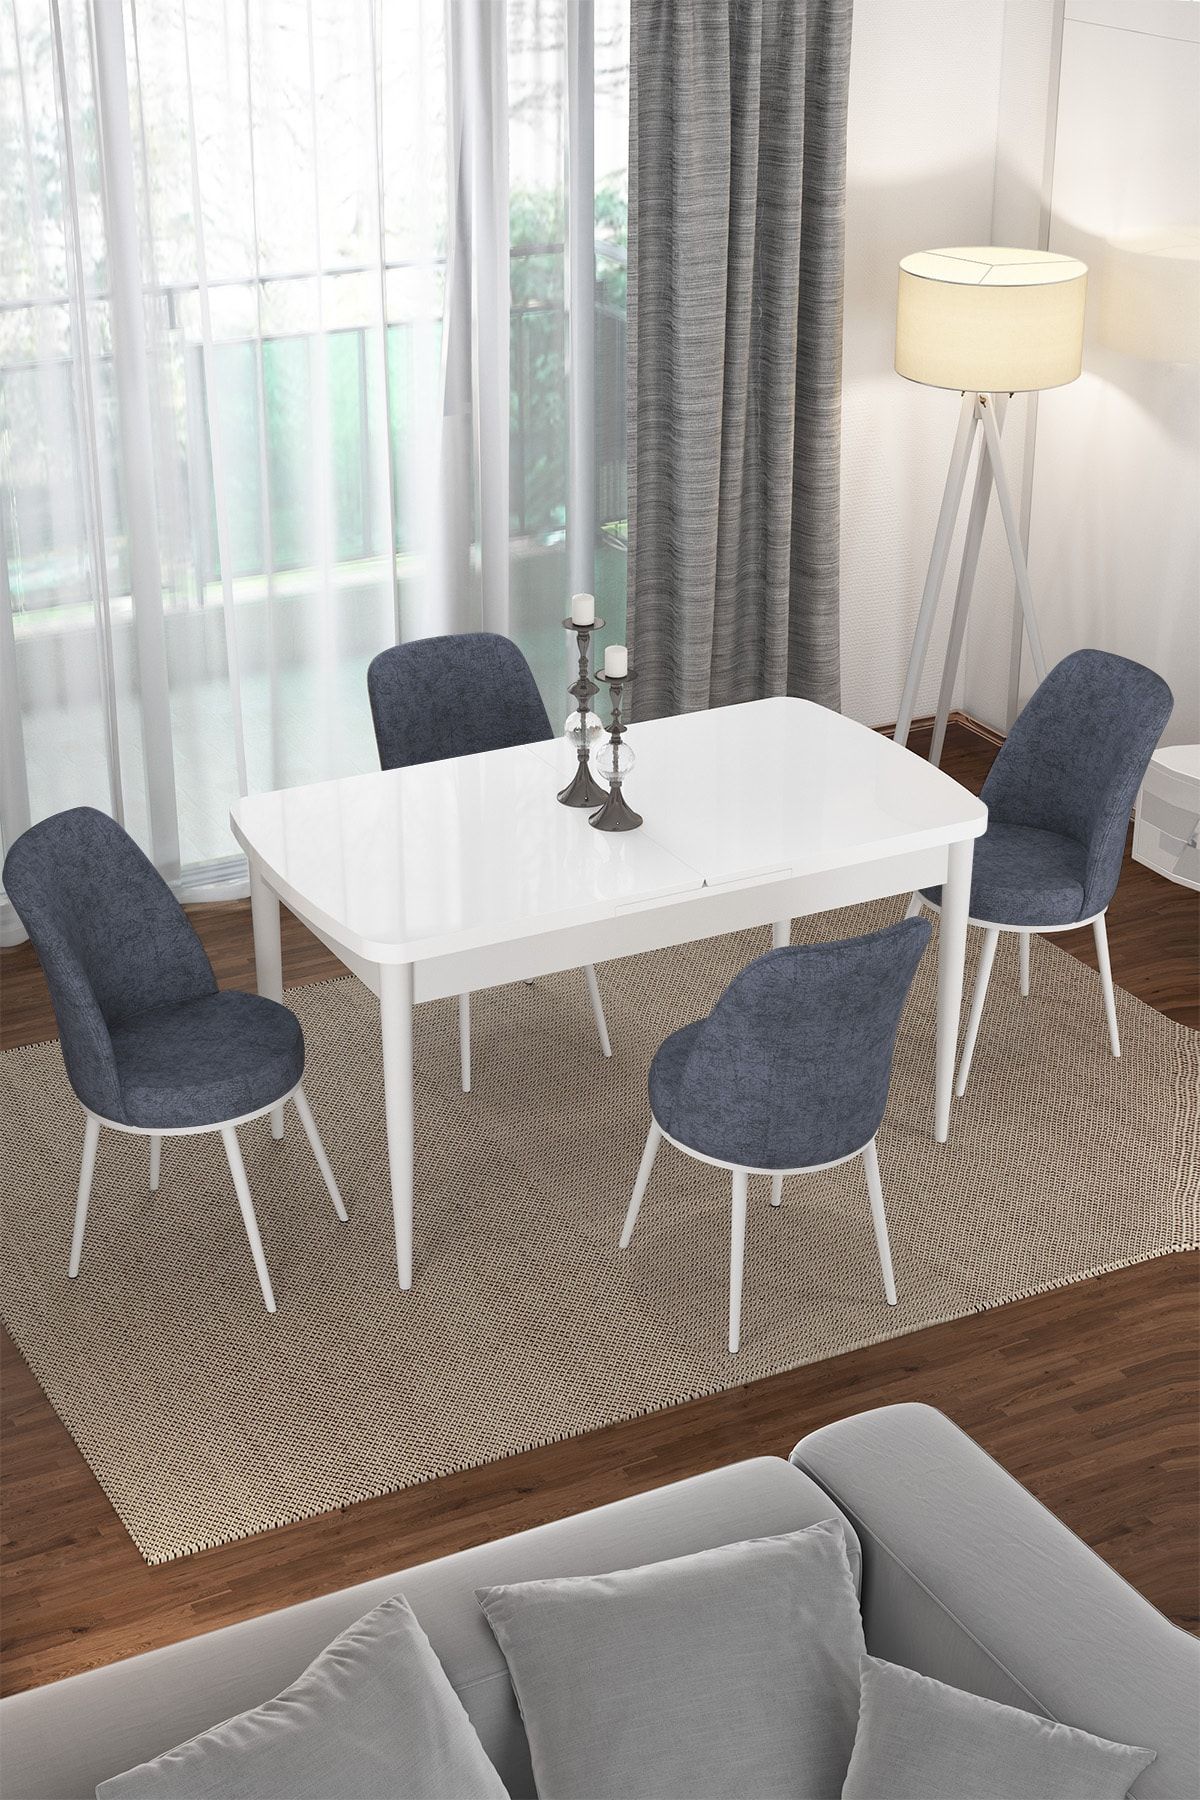 Rovena Bade Beyaz 70x114 Mdf Açılabilir Mutfak Masası Takımı 4 Adet Sandalye